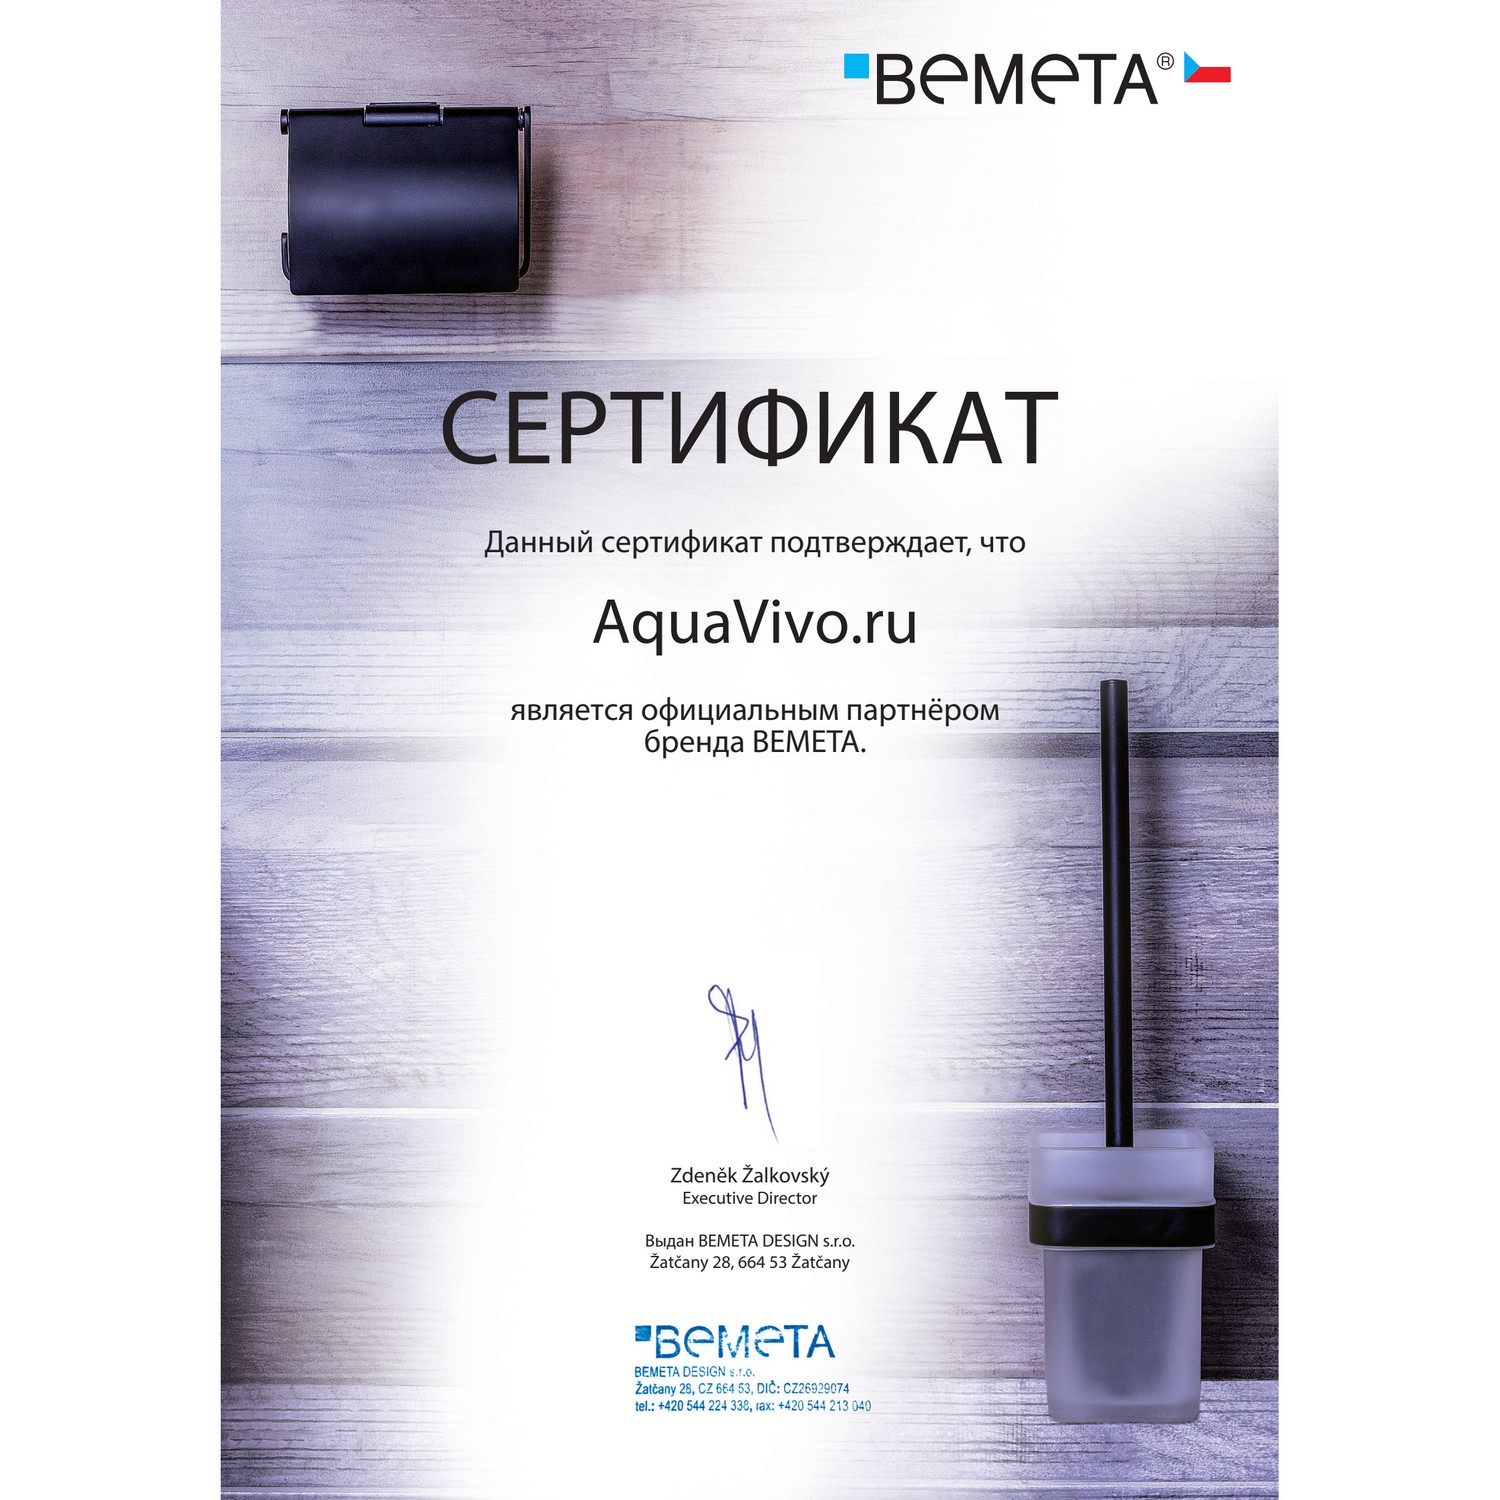 Стакан Bemeta Beta 132110042 двойной, с держателем зубной щетки, настенный